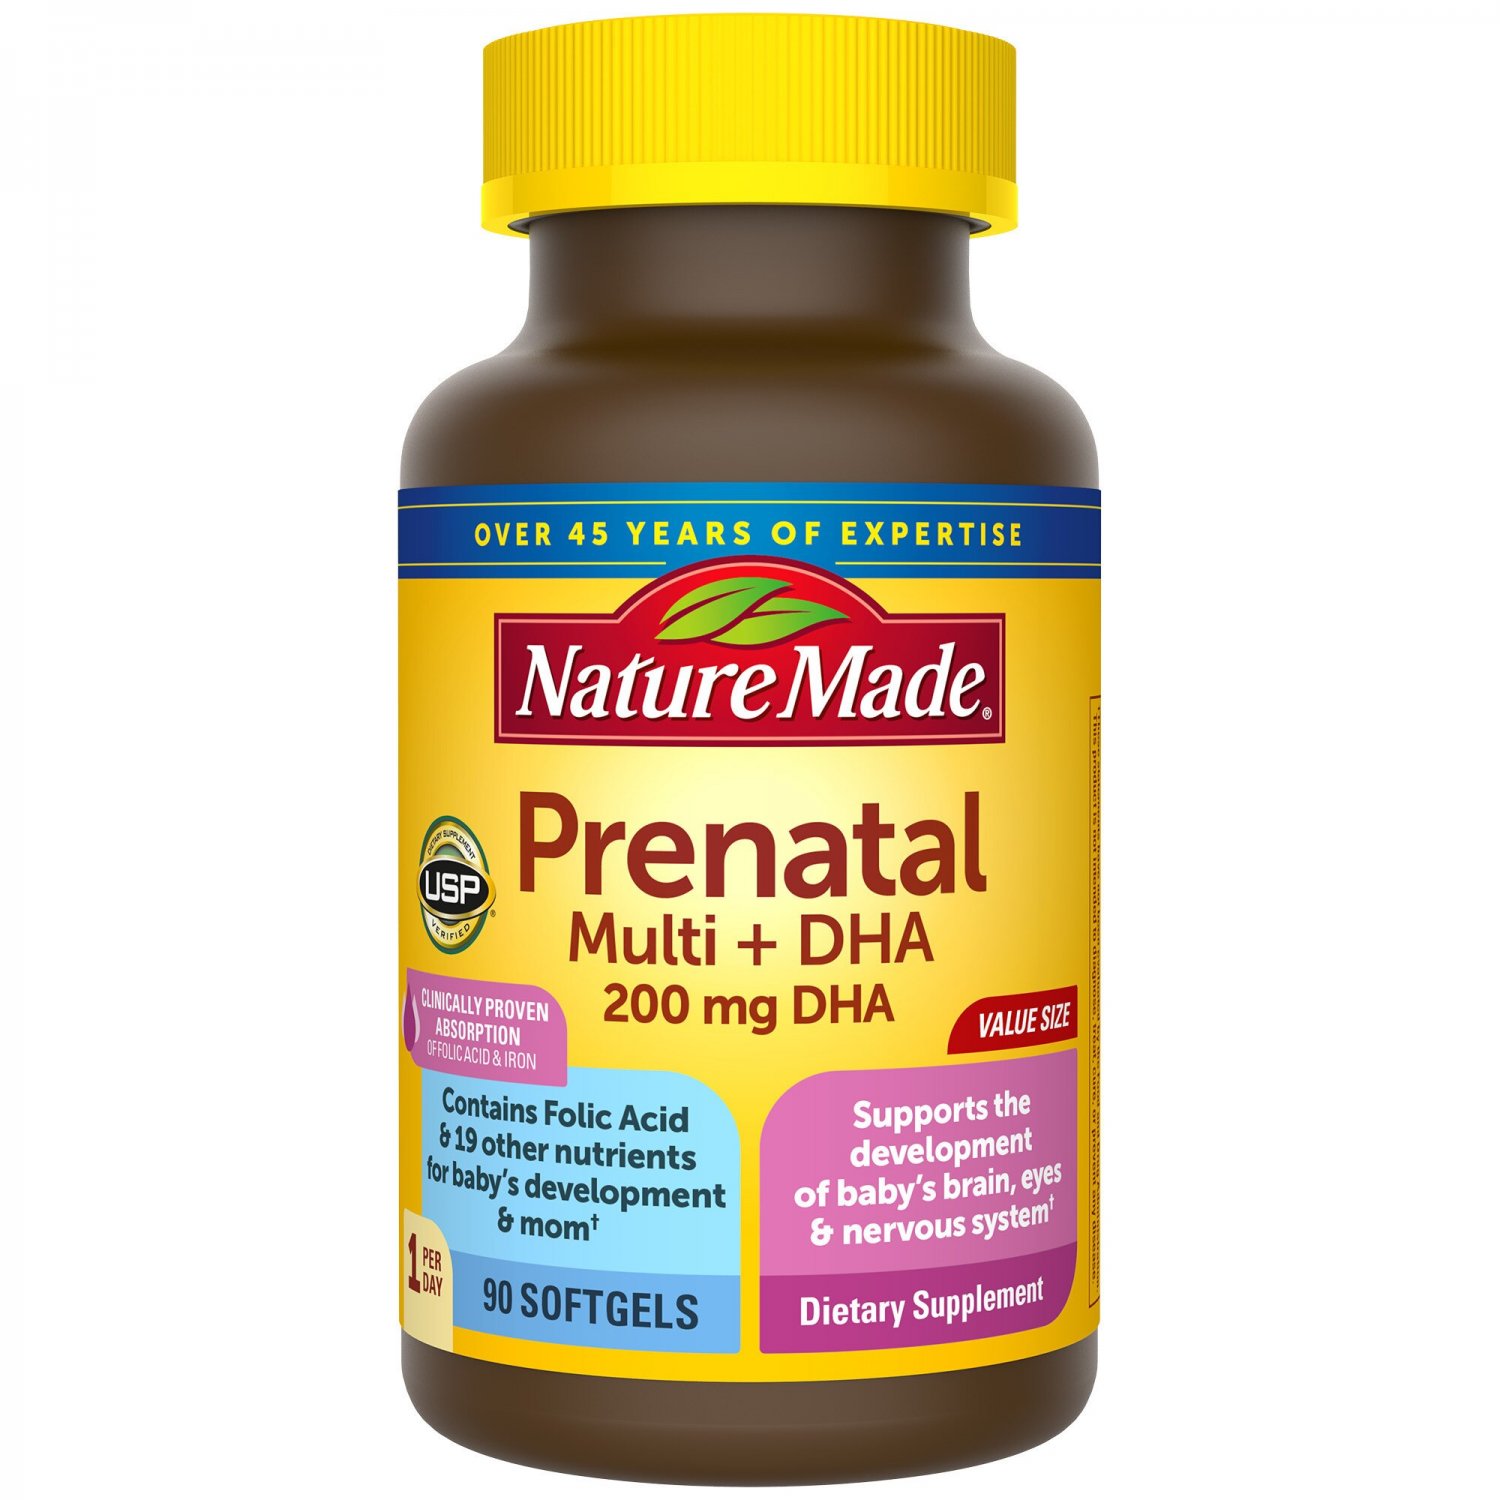 Nature Made Prenatal Multivitamin + DHA 200mg, 90 Softgels